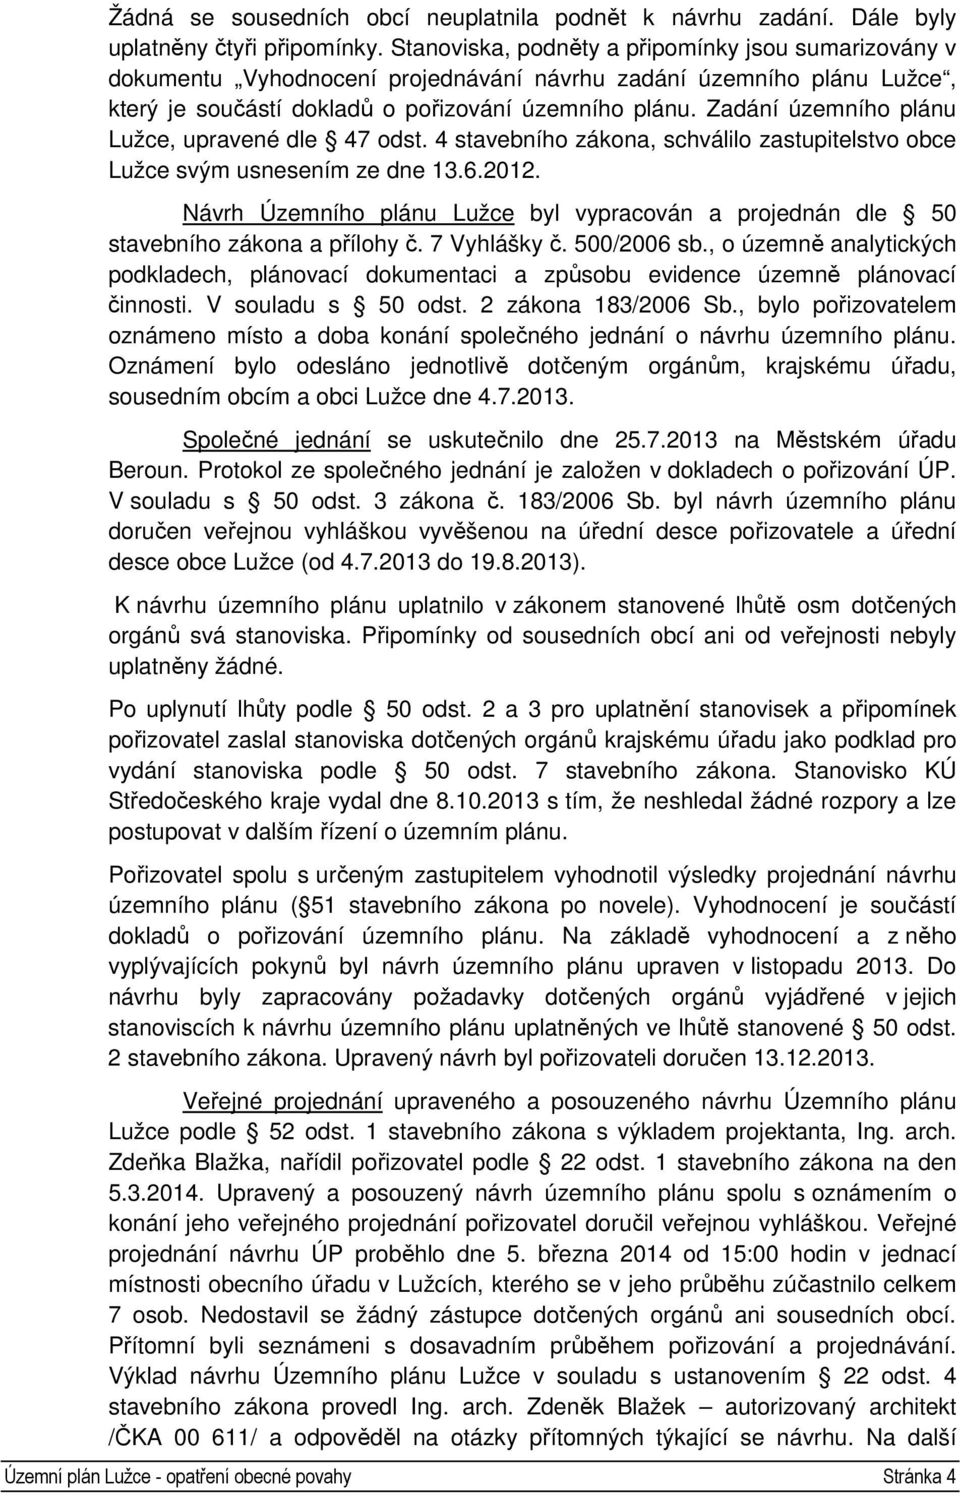 Zadání územního plánu Lužce, upravené dle 47 odst. 4 stavebního zákona, schválilo zastupitelstvo obce Lužce svým usnesením ze dne 13.6.2012.